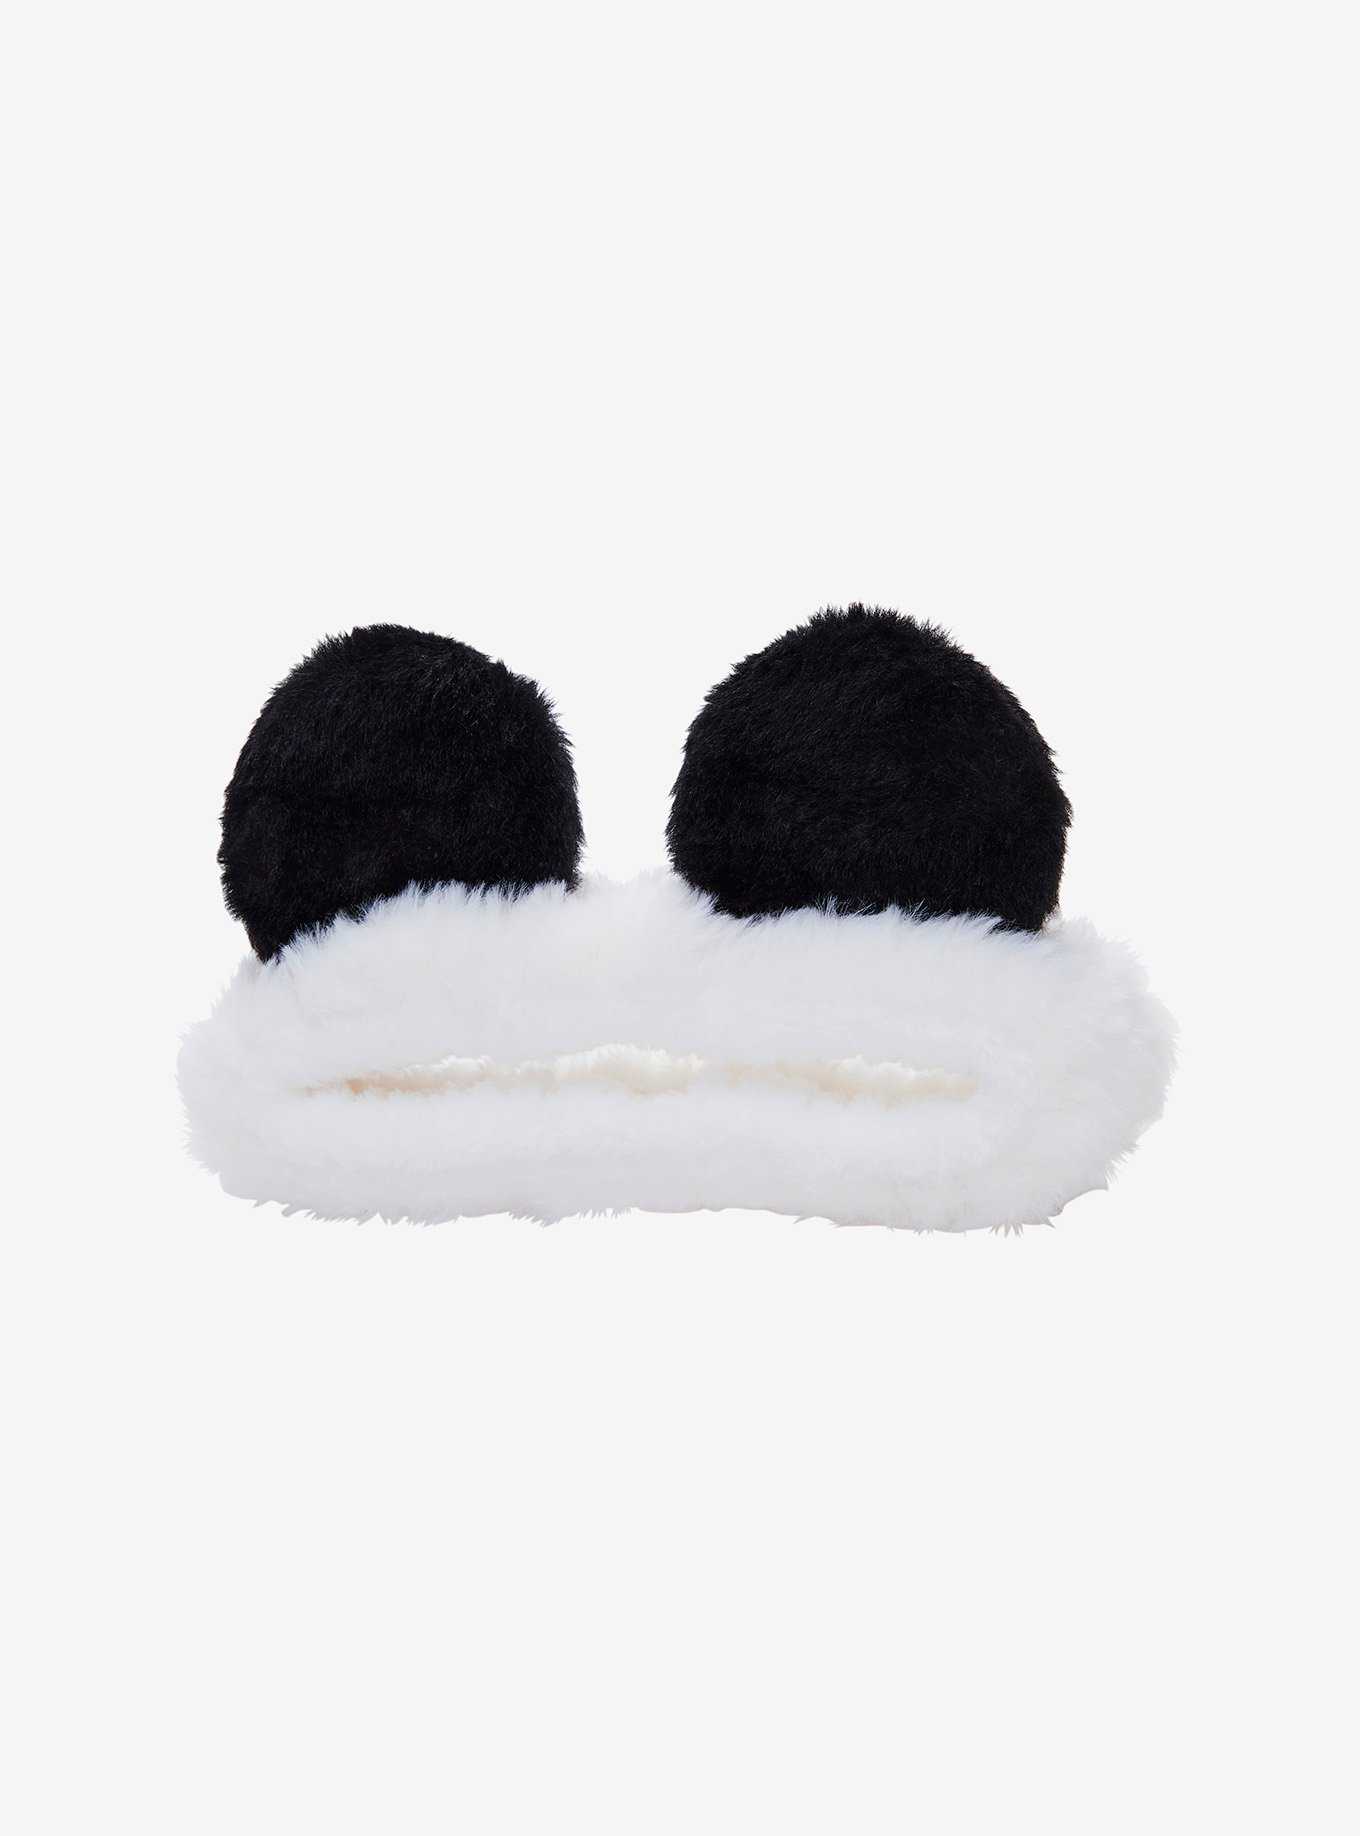 Panda 3D Ears Plush Spa Headband, , hi-res